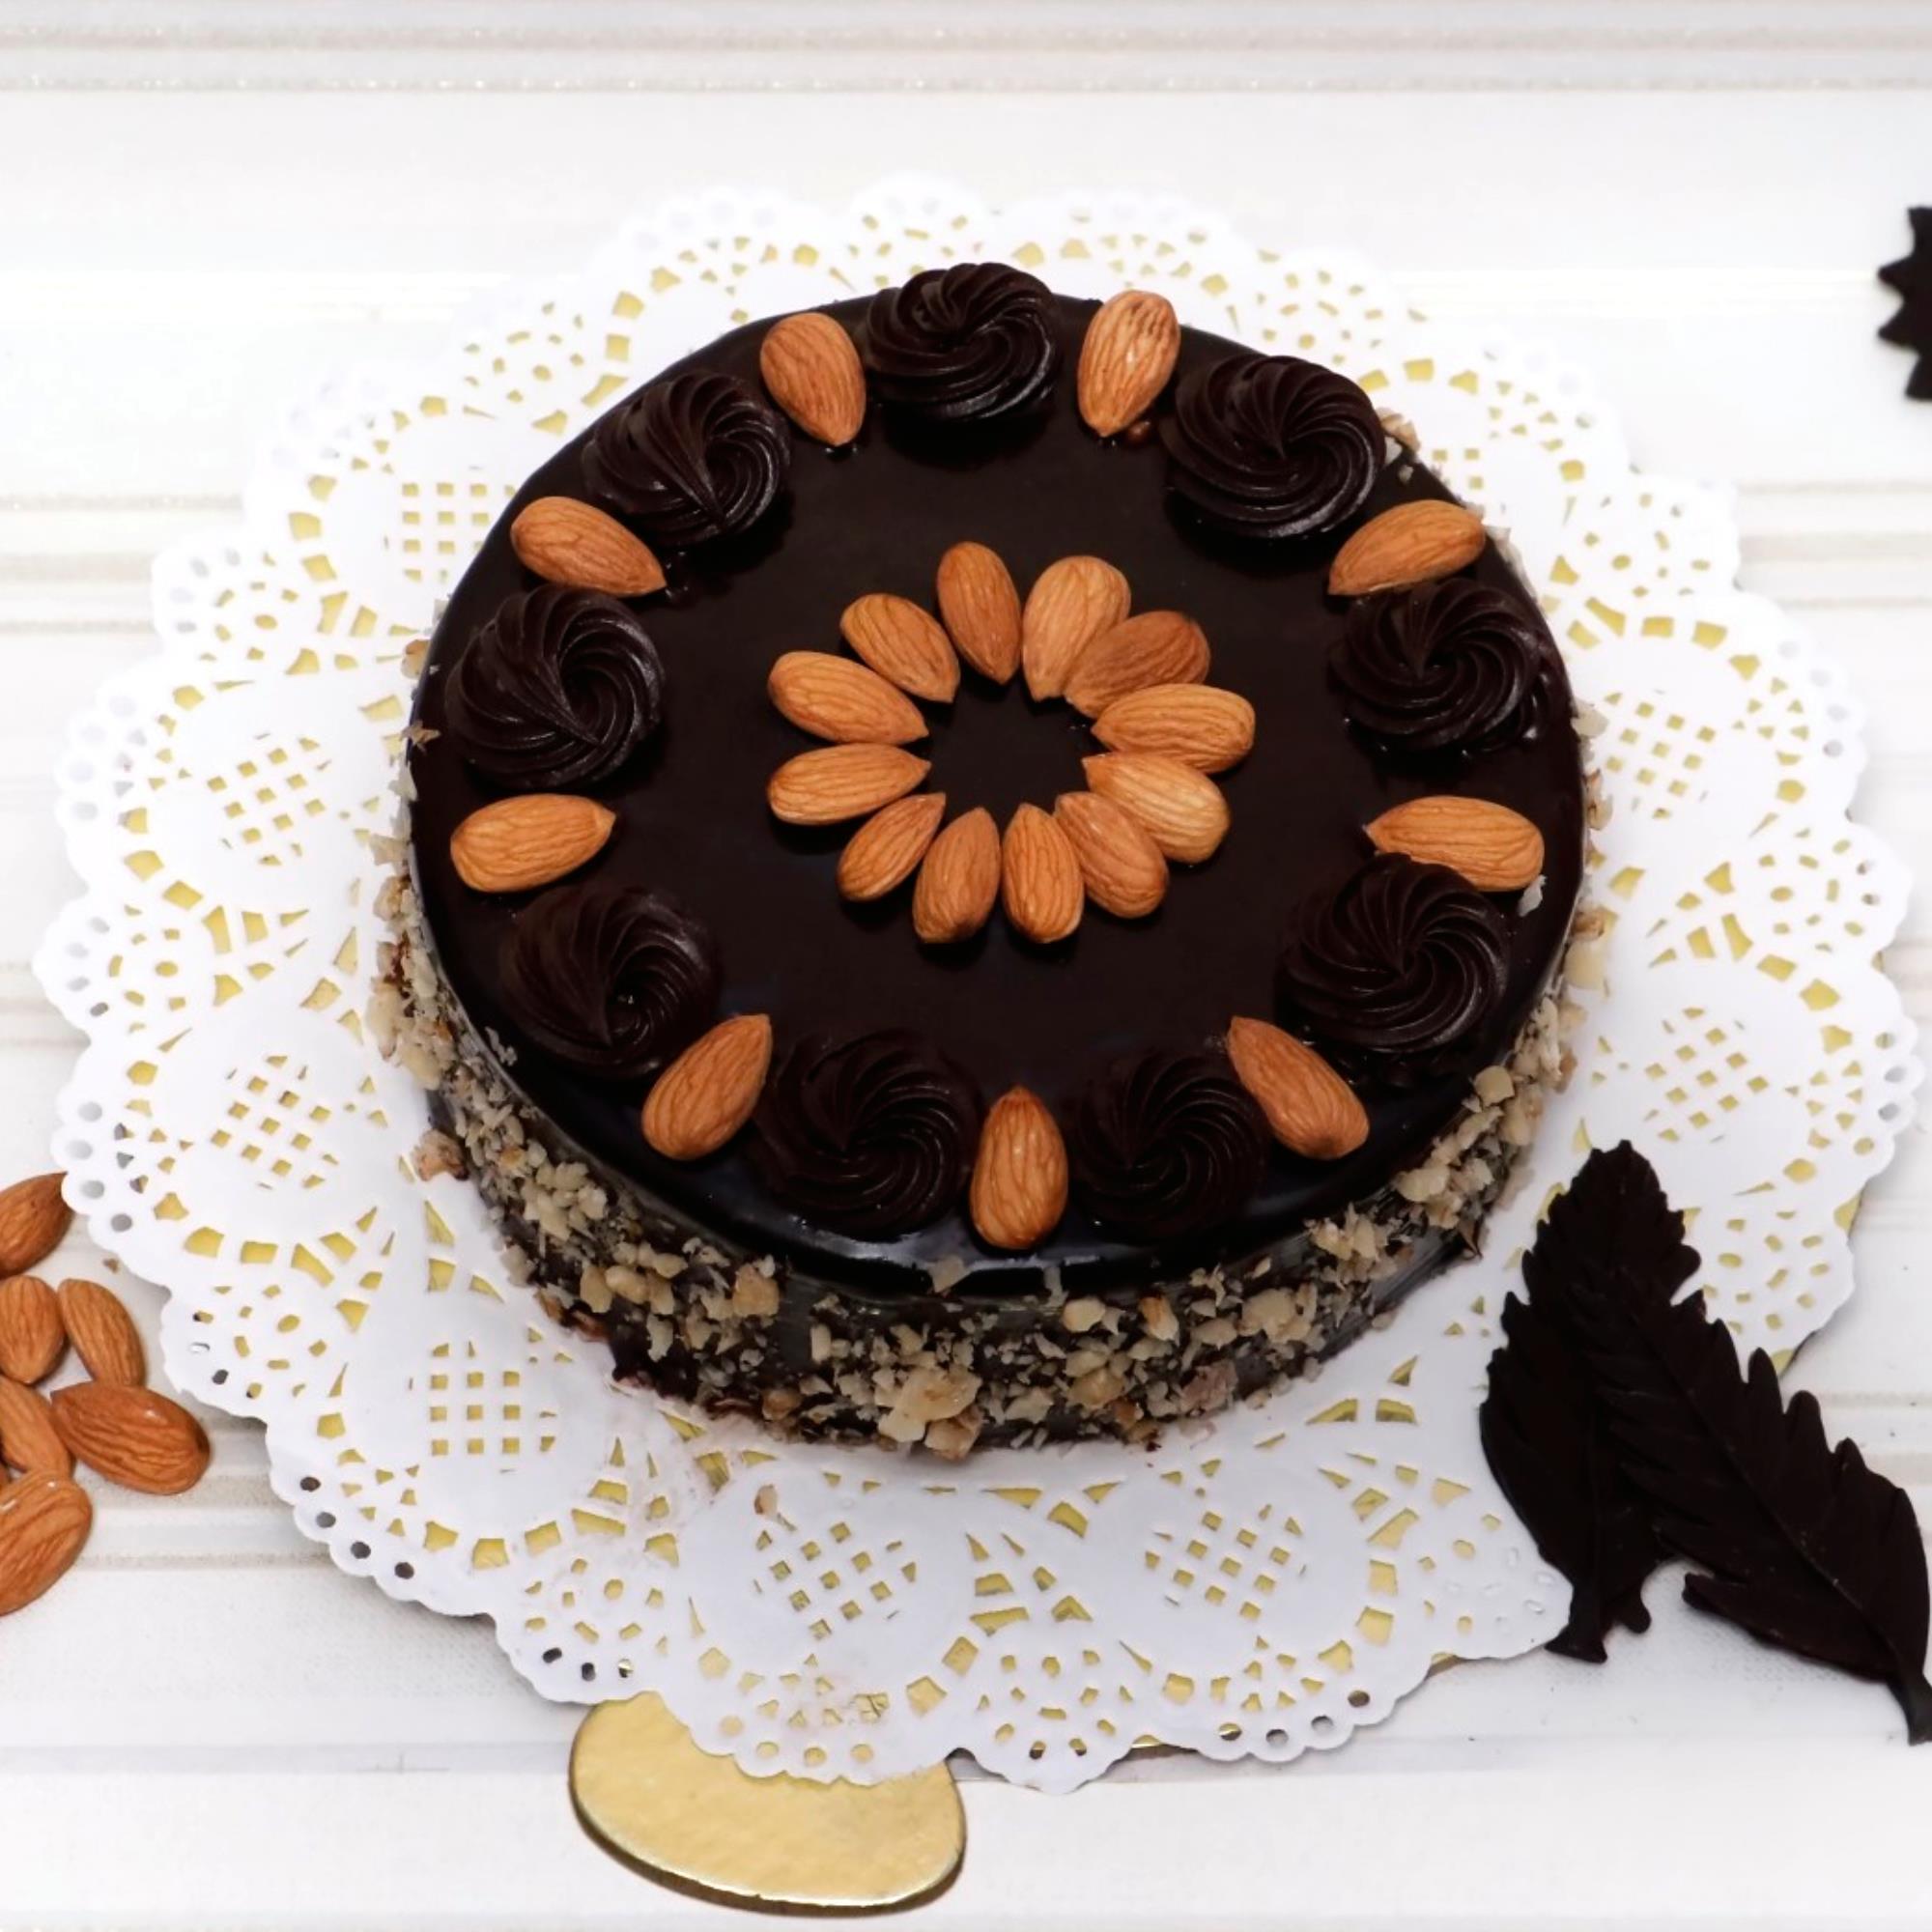 Gluten-Free Chocolate Torte | Gourmande in the Kitchen